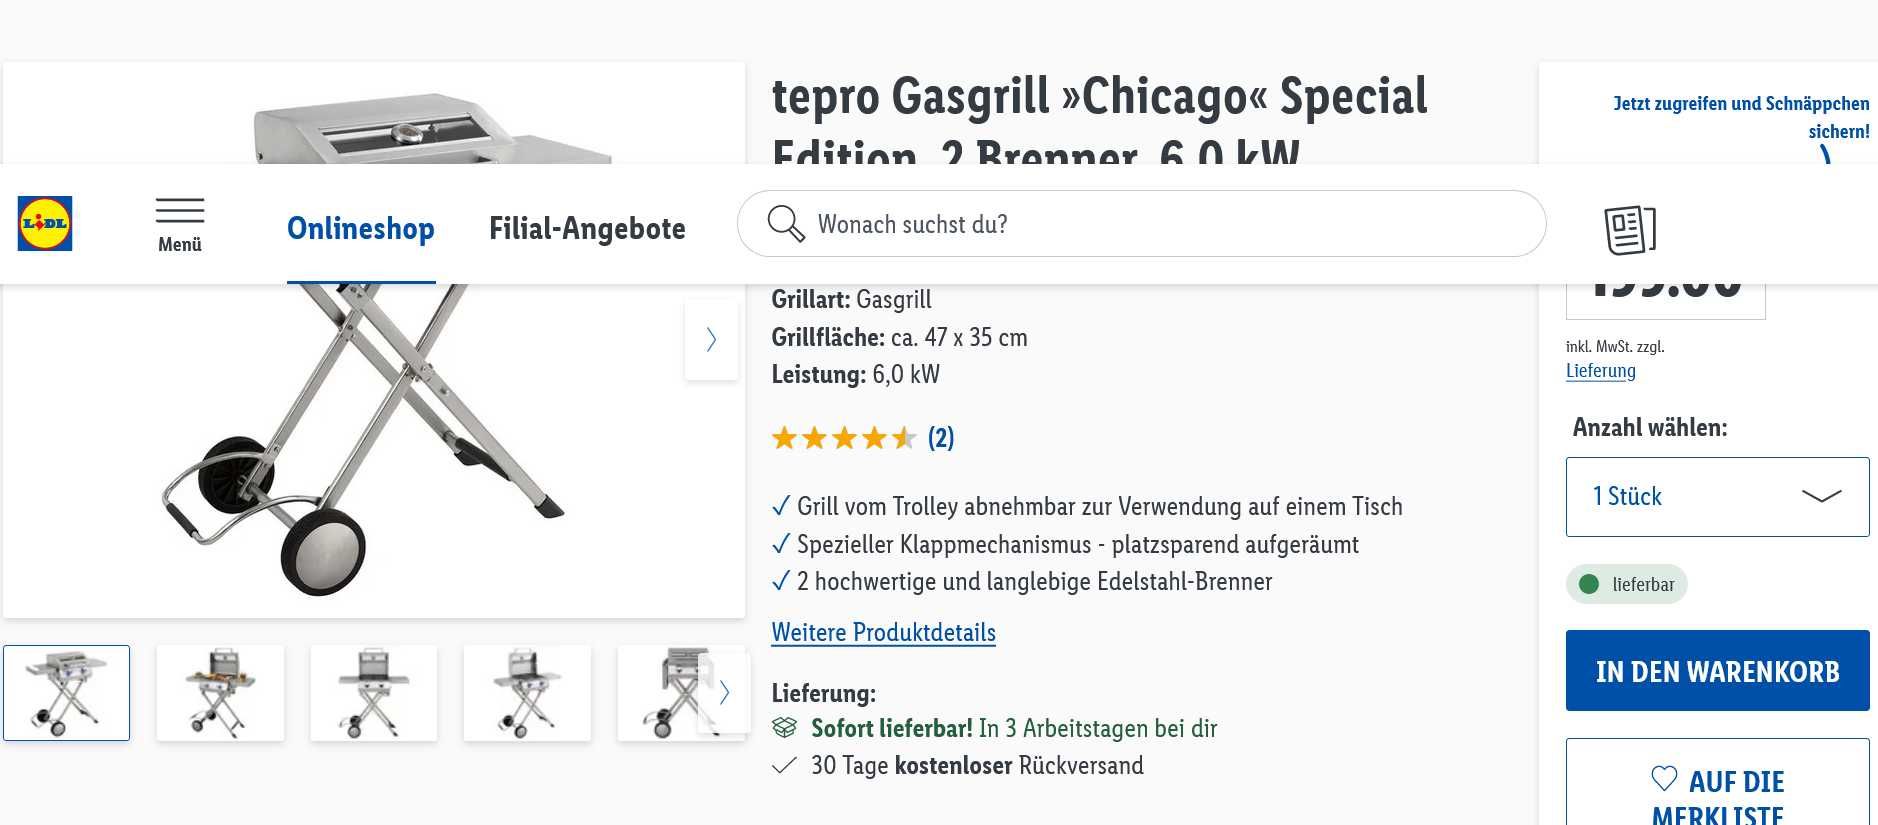 Grill gazowy 2 palnikowy stal nierdzewna Tepro Chicago Special Edition